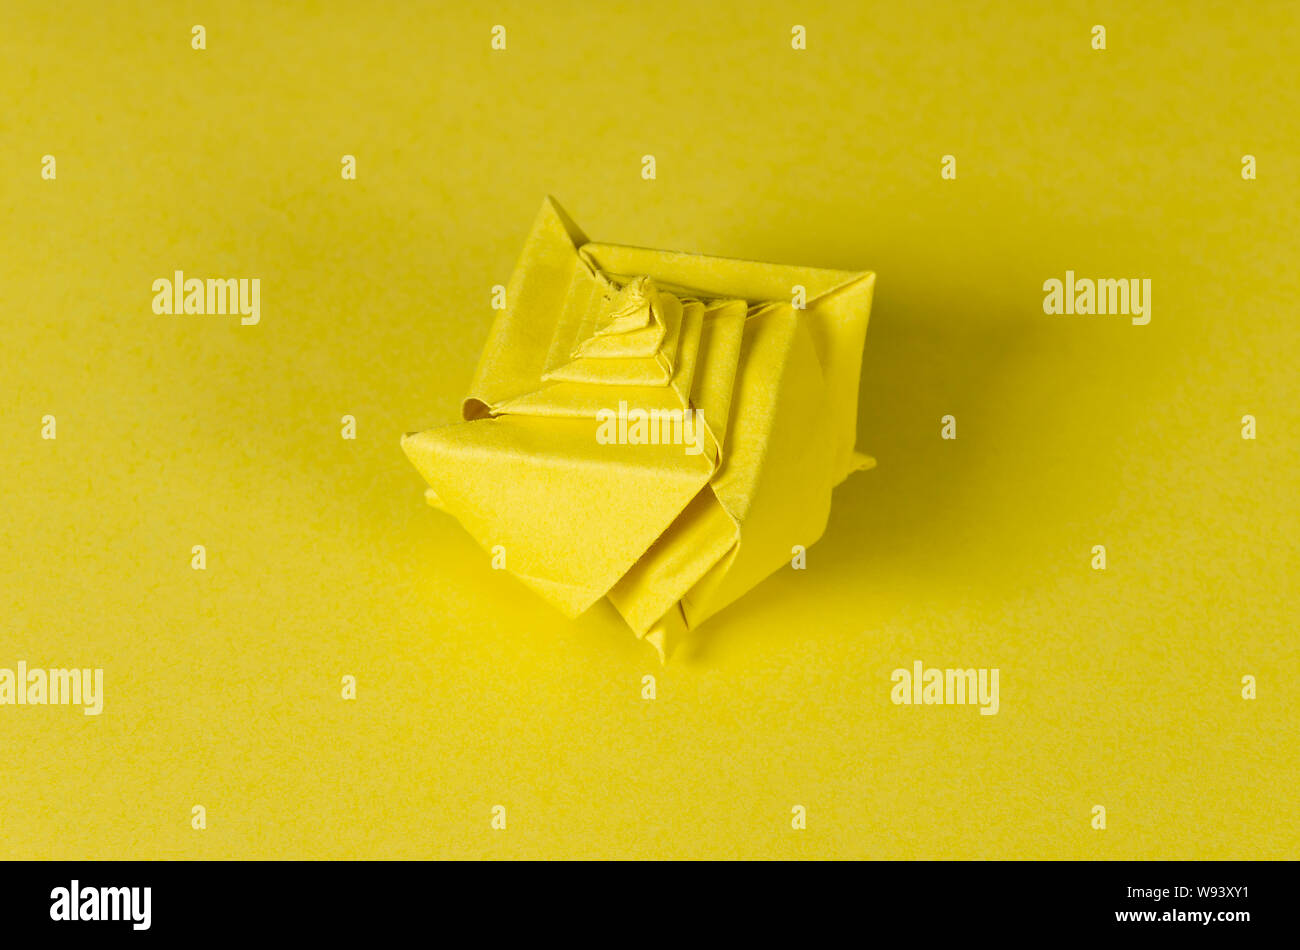 Concha de origami de color amarillo sobre fondo amarillo. Arte japonés de plegado de papel. Hoja de papel cuadrado plano trasladados en una escultura terminada. Foto de stock